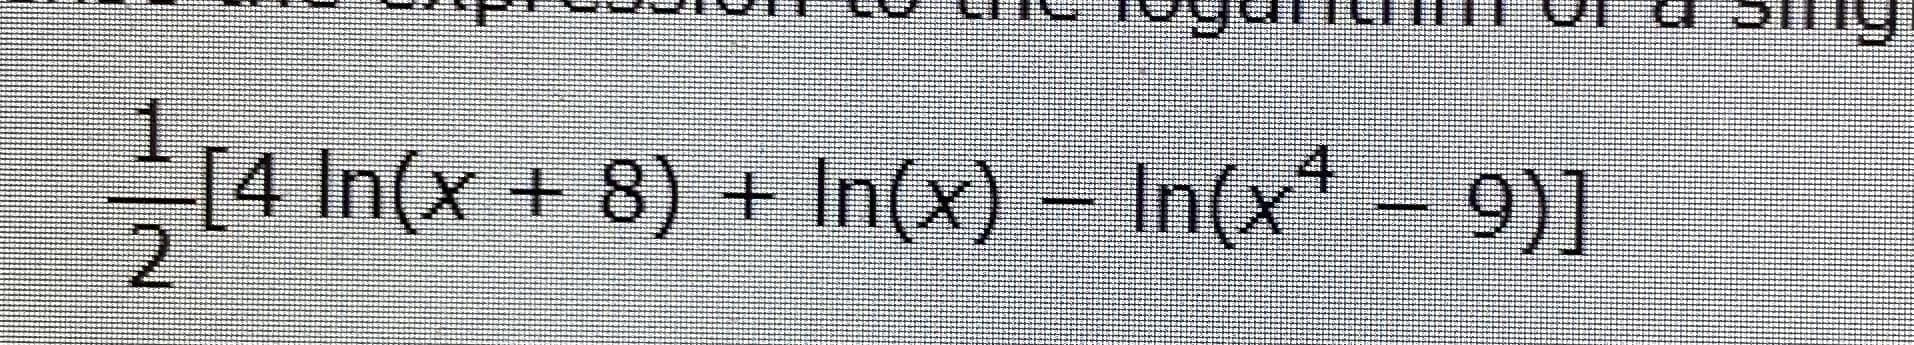 [4 In(x + 8) + In(x) – In(x* - 9)]
